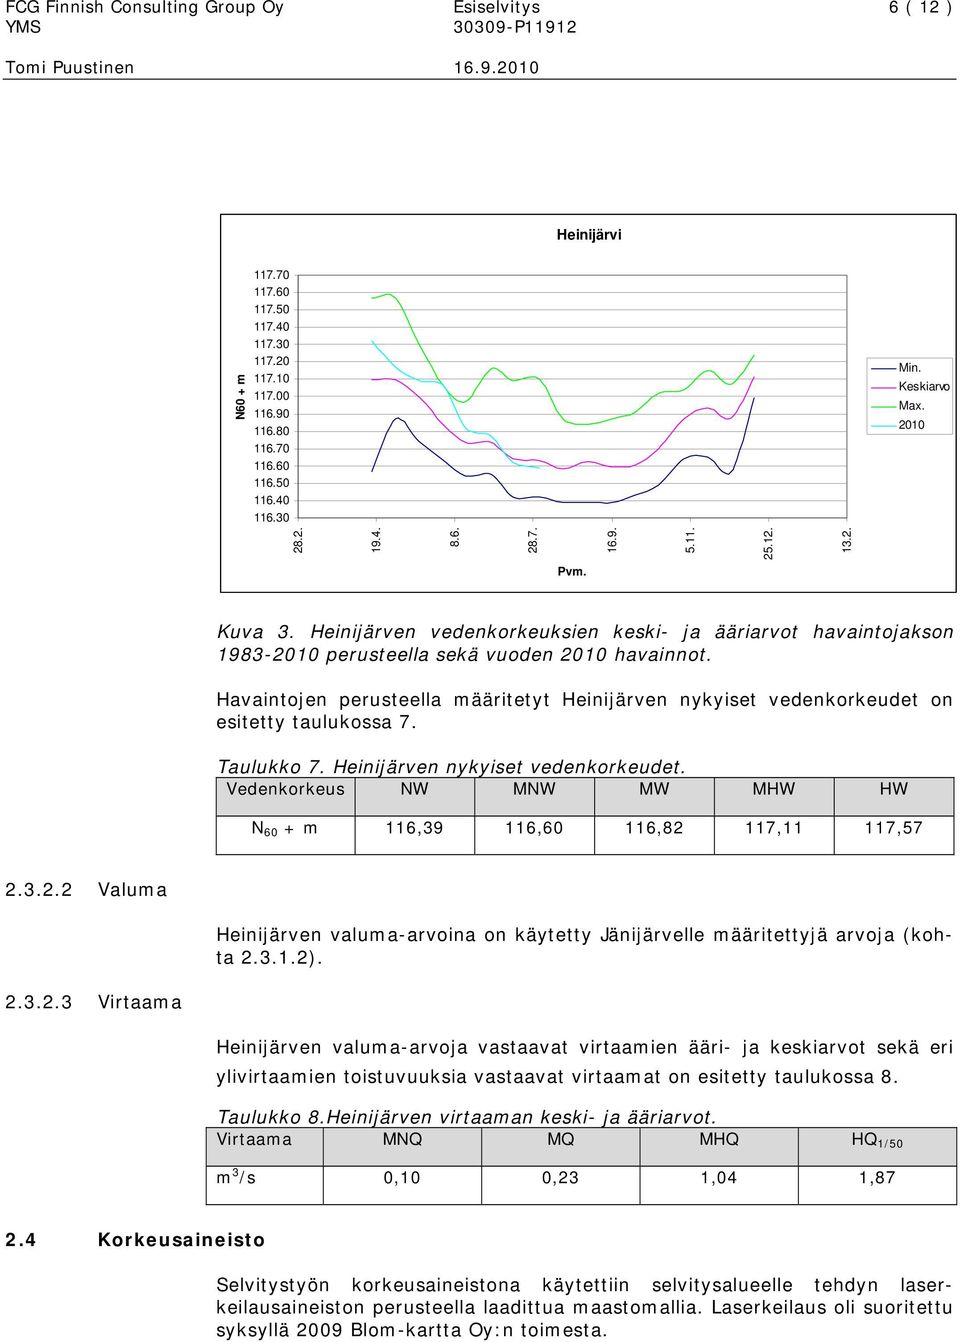 Havaintojen perusteella määritetyt Heinijärven nykyiset vedenkorkeudet on esitetty taulukossa 7. Taulukko 7. Heinijärven nykyiset vedenkorkeudet. Vedenkorkeus NW MNW MW MHW HW N 60 + m 116,39 116,60 116,82 117,11 117,57 2.